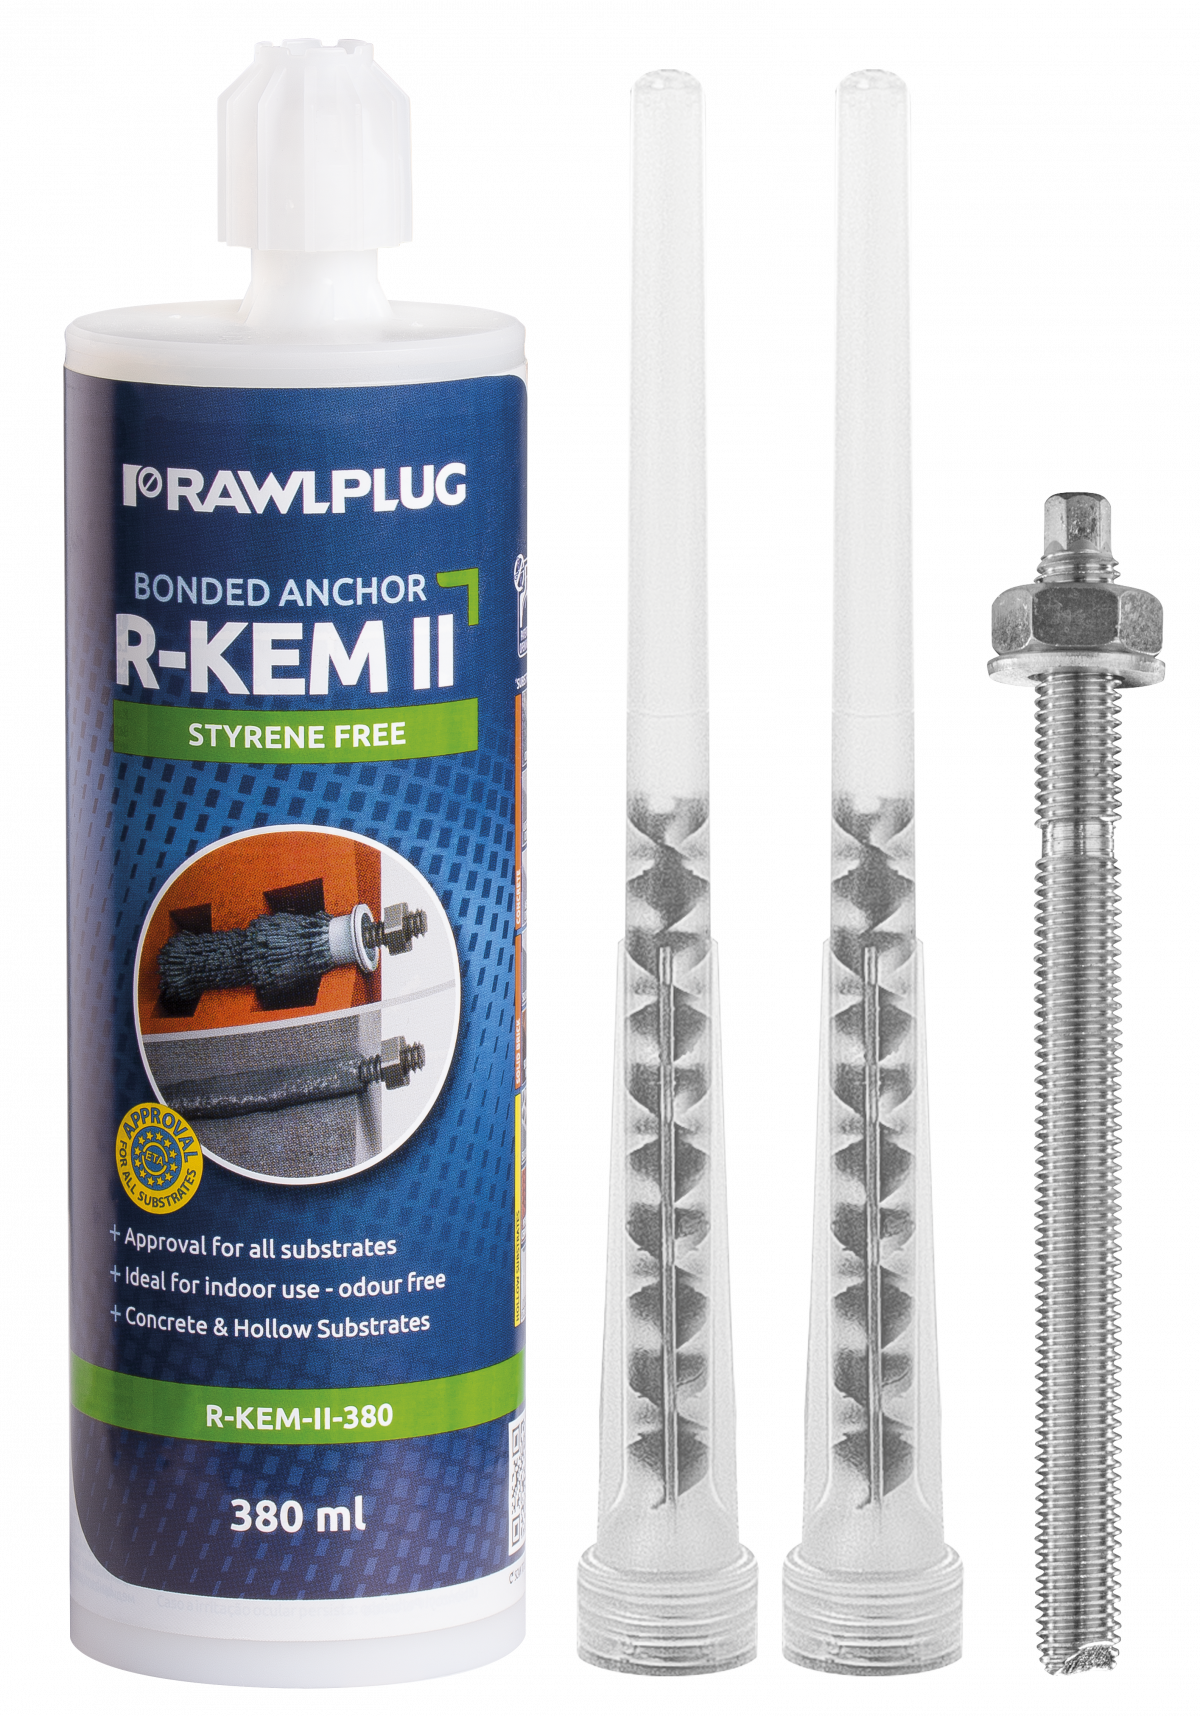 R-KEM II Химический анкер (полиэстровая смола) без стирола с резьбовыми шпильками для бетона